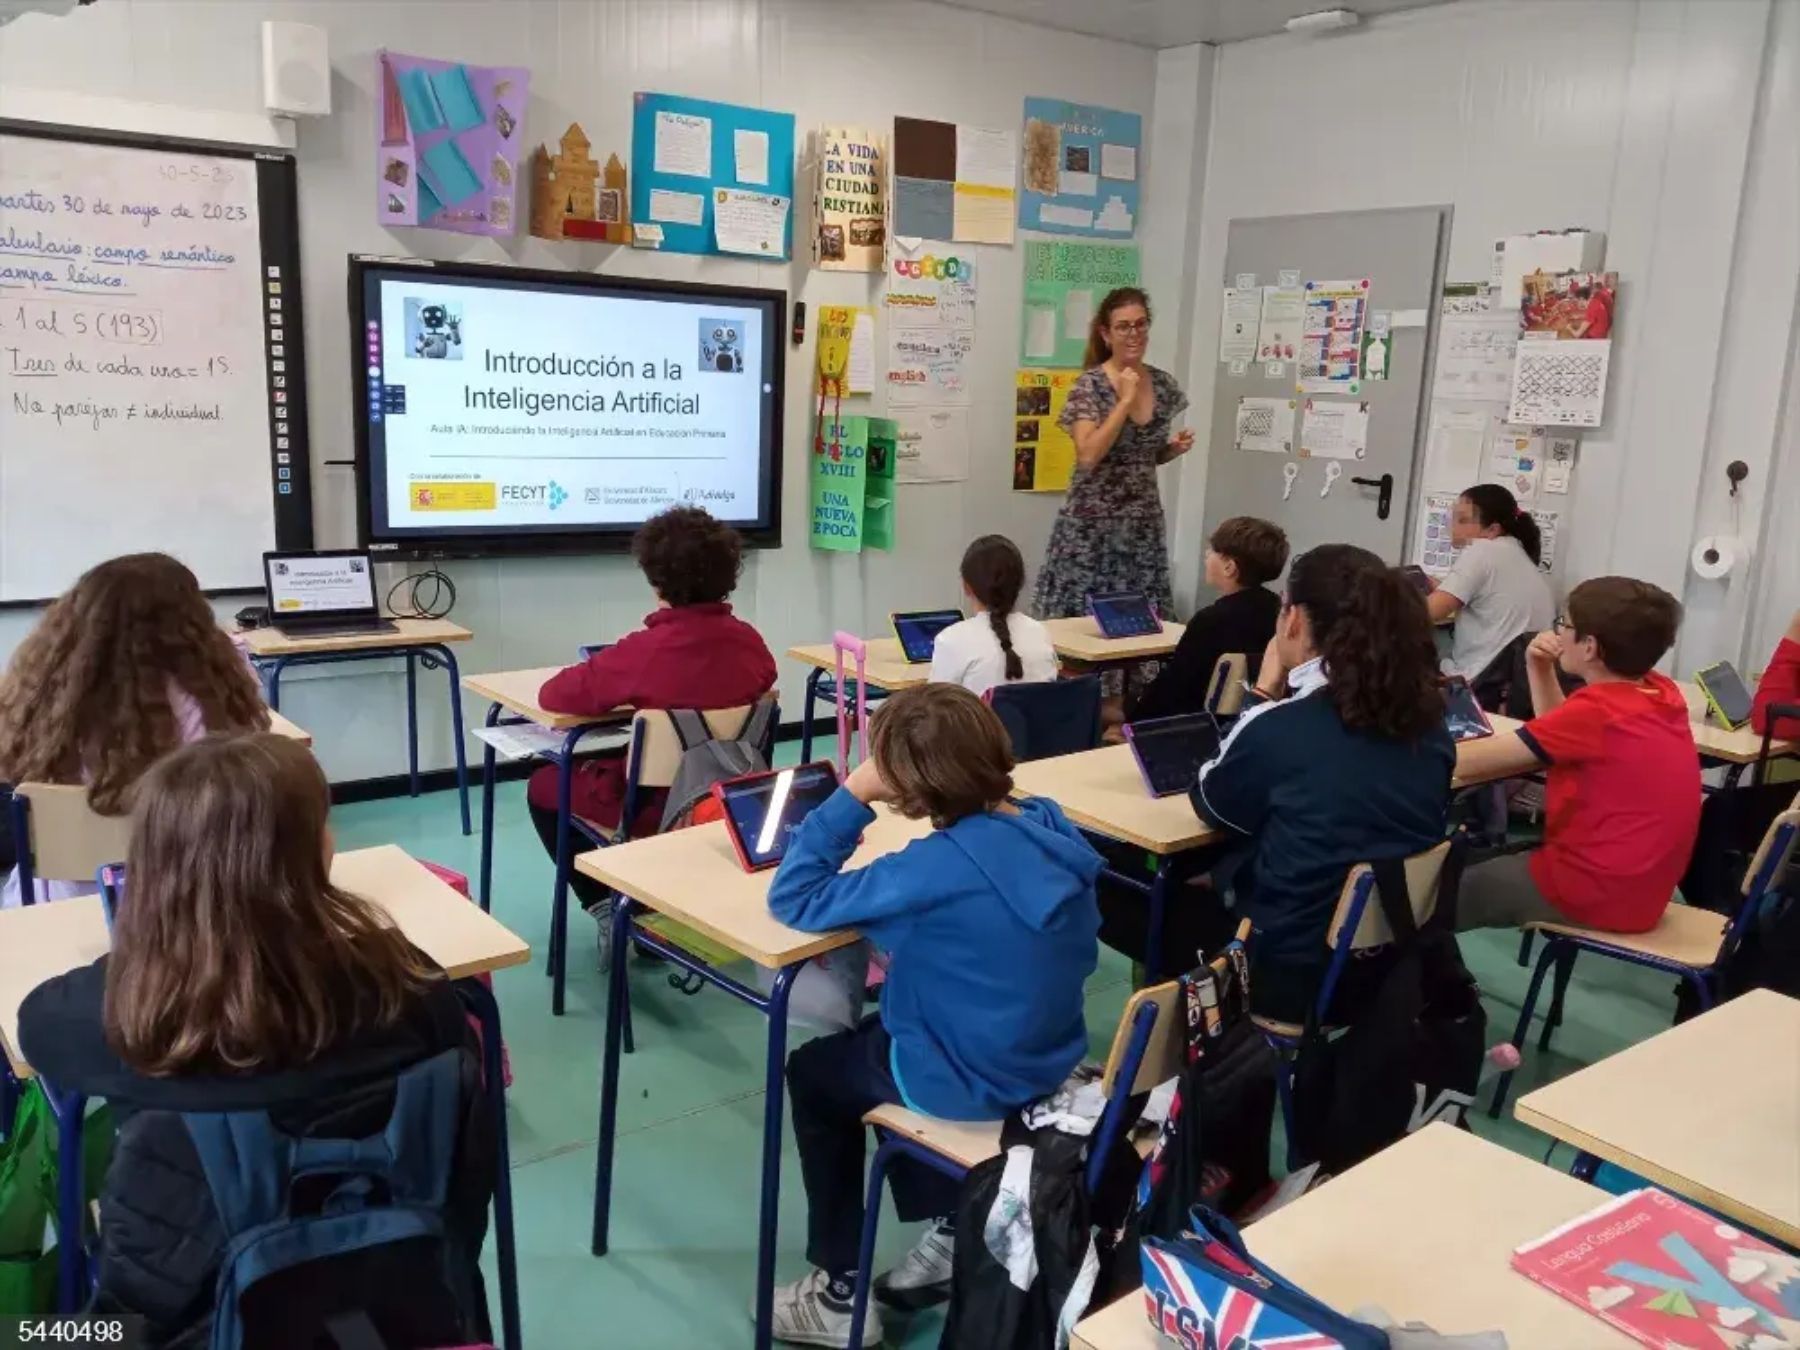 El sistema educativo de Castilla y León es el más equitativo del país entre alumnos desfavorecidos y con más recursos